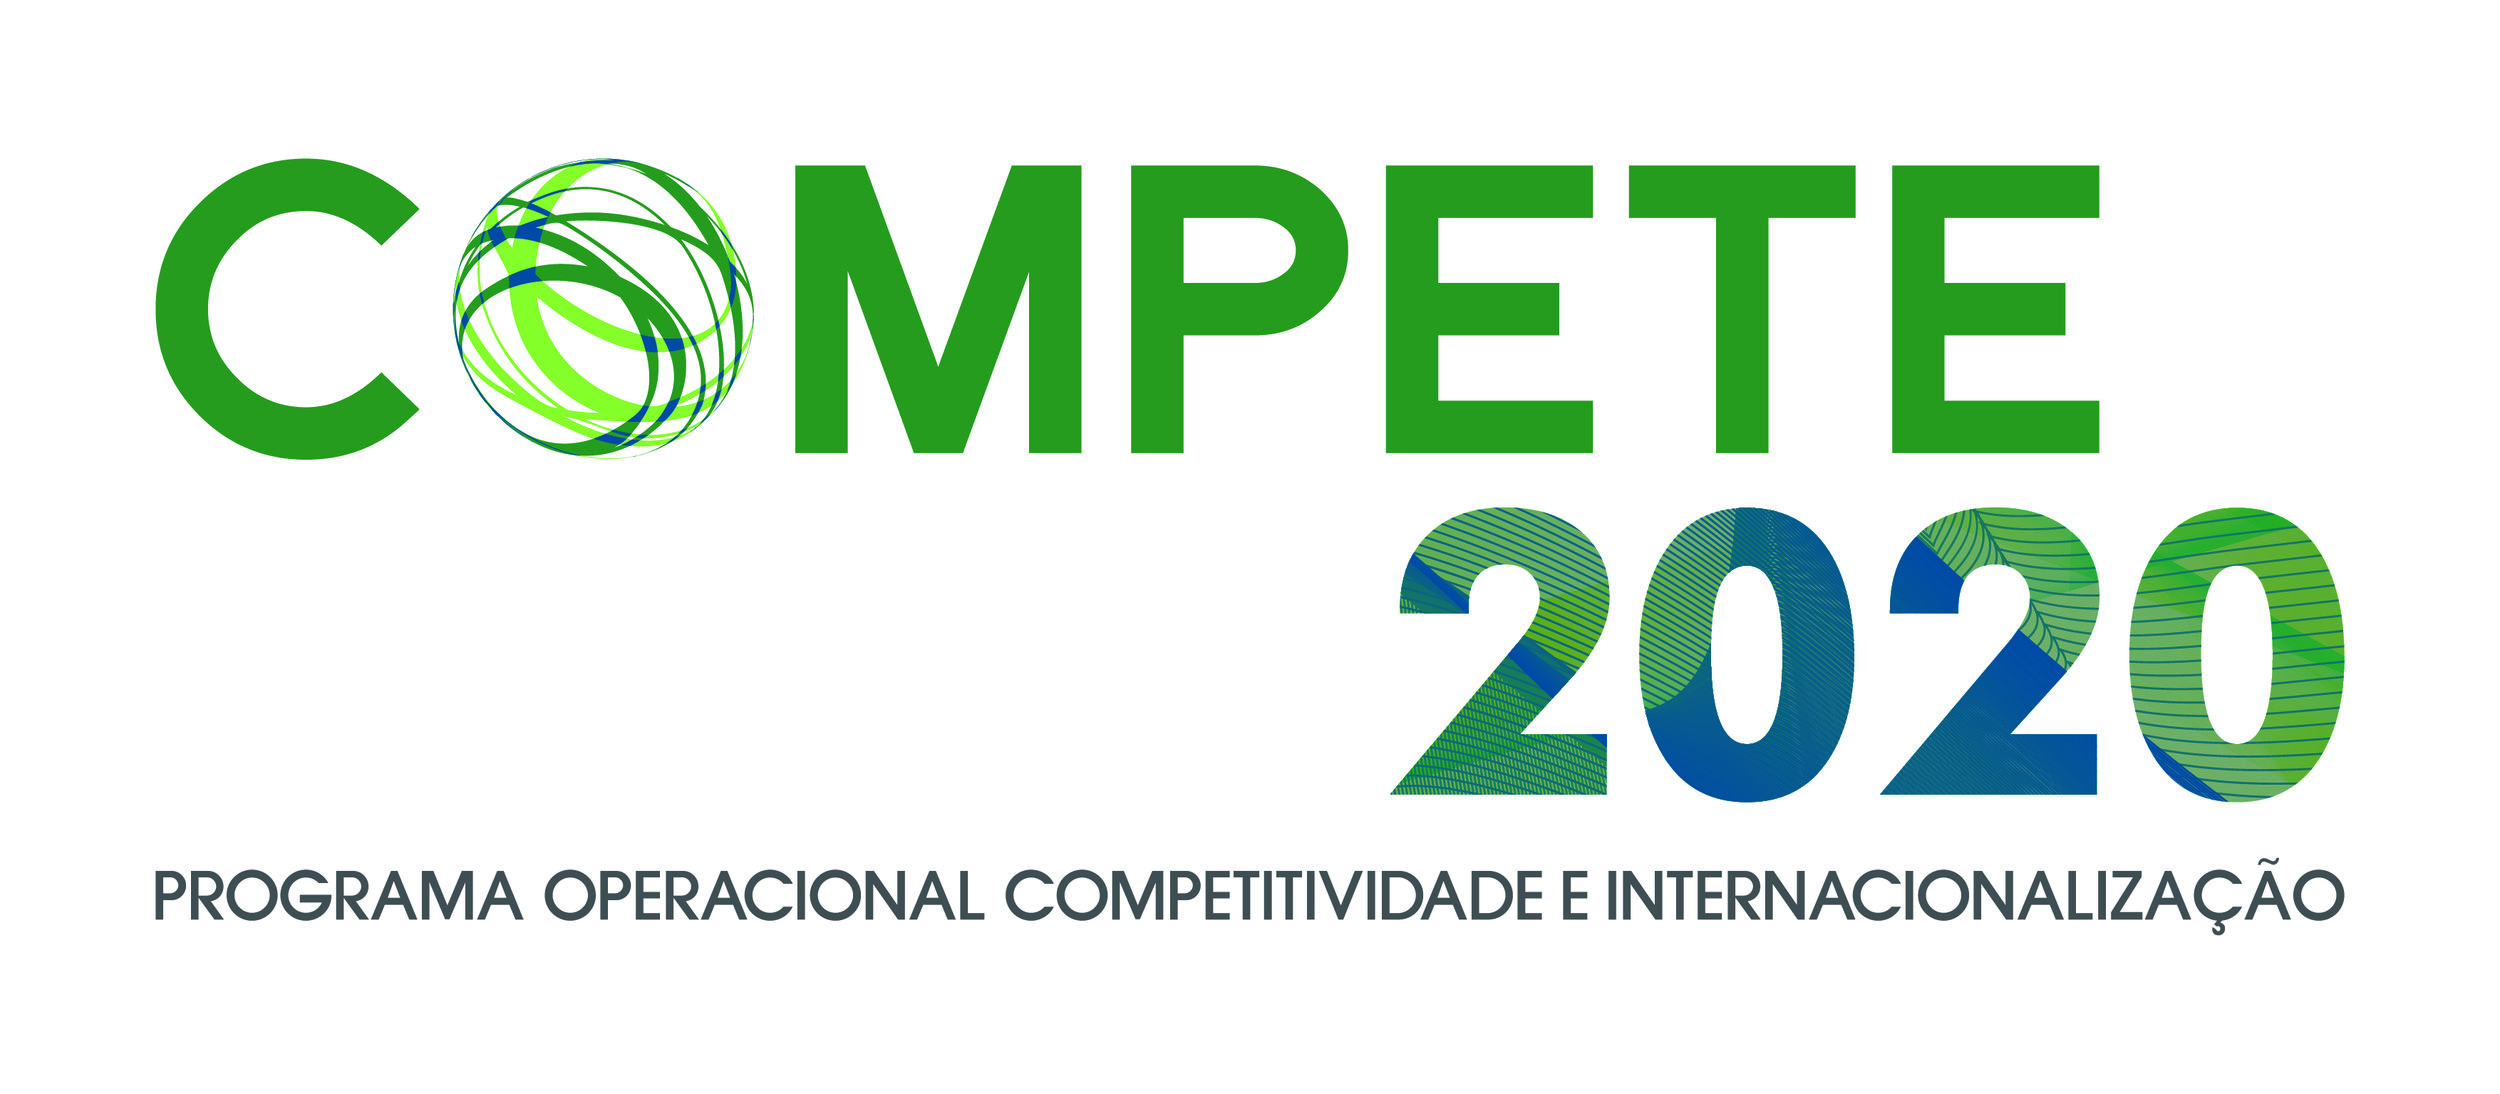 Logo_Compete2020 Programa Operacional Copetitividade e Internacionalização-01.jpg